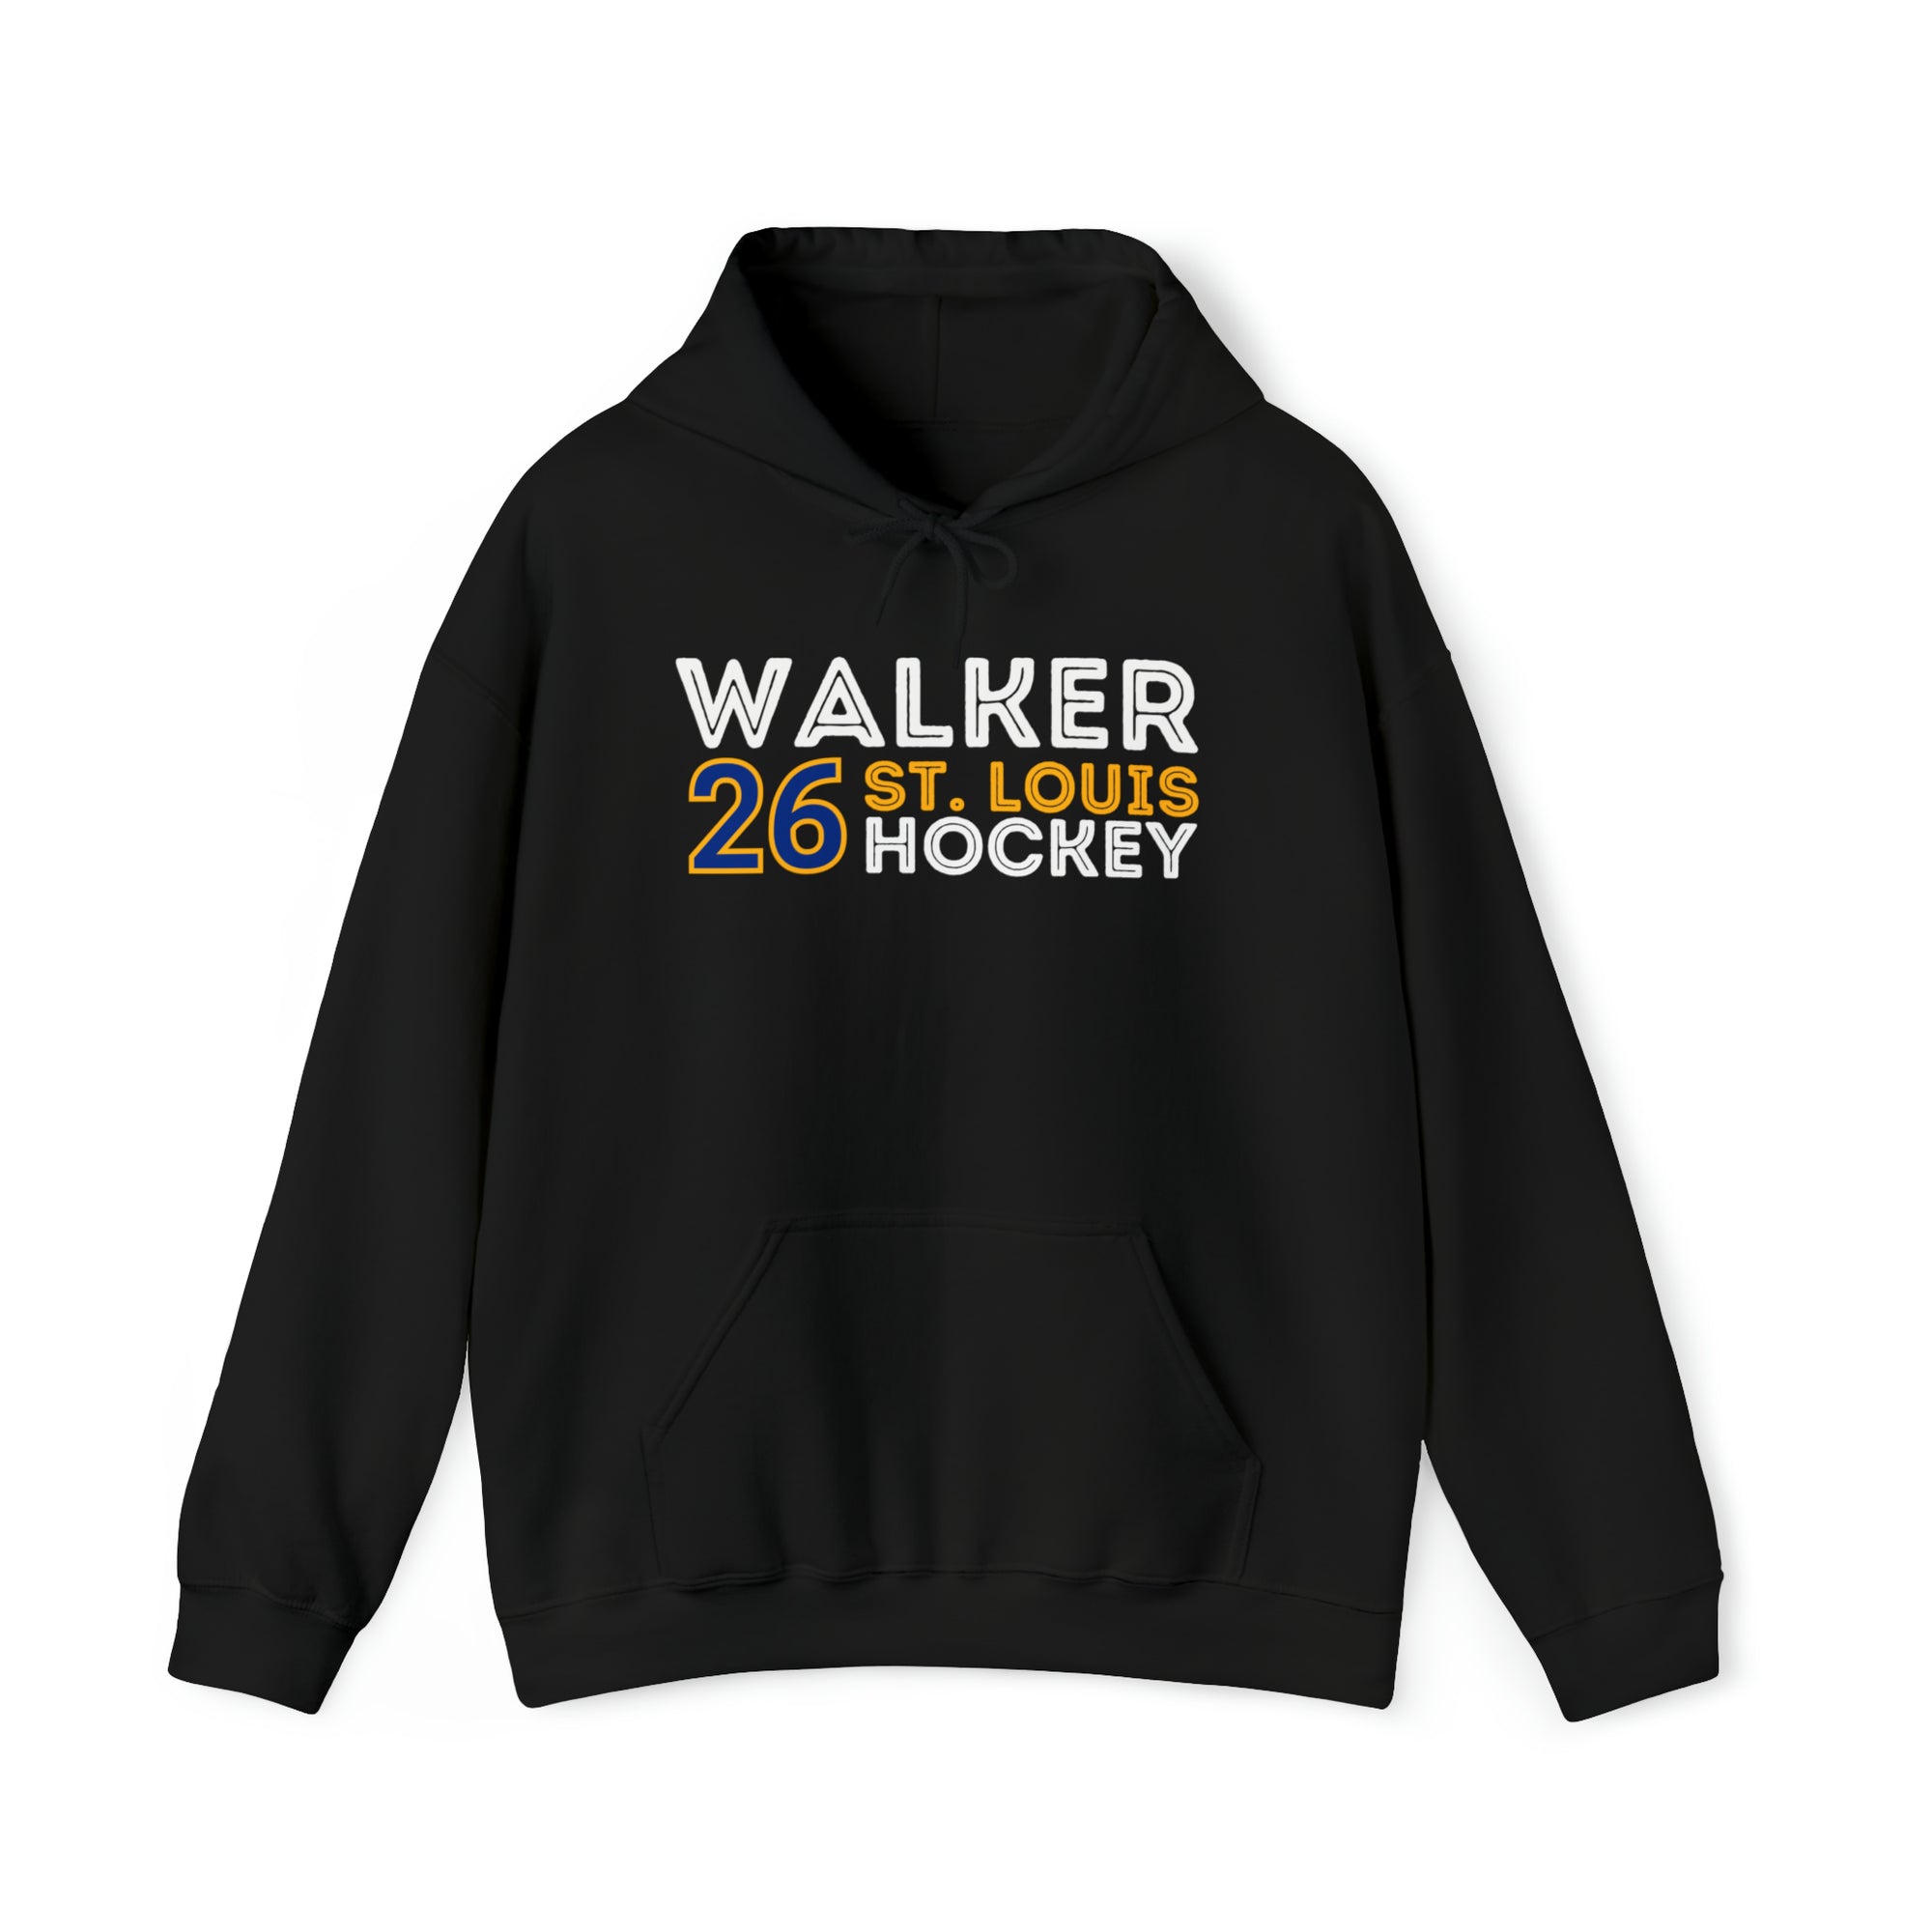 Walker 26 St. Louis Hockey Grafitti Wall Design Unisex Hooded Sweatshirt